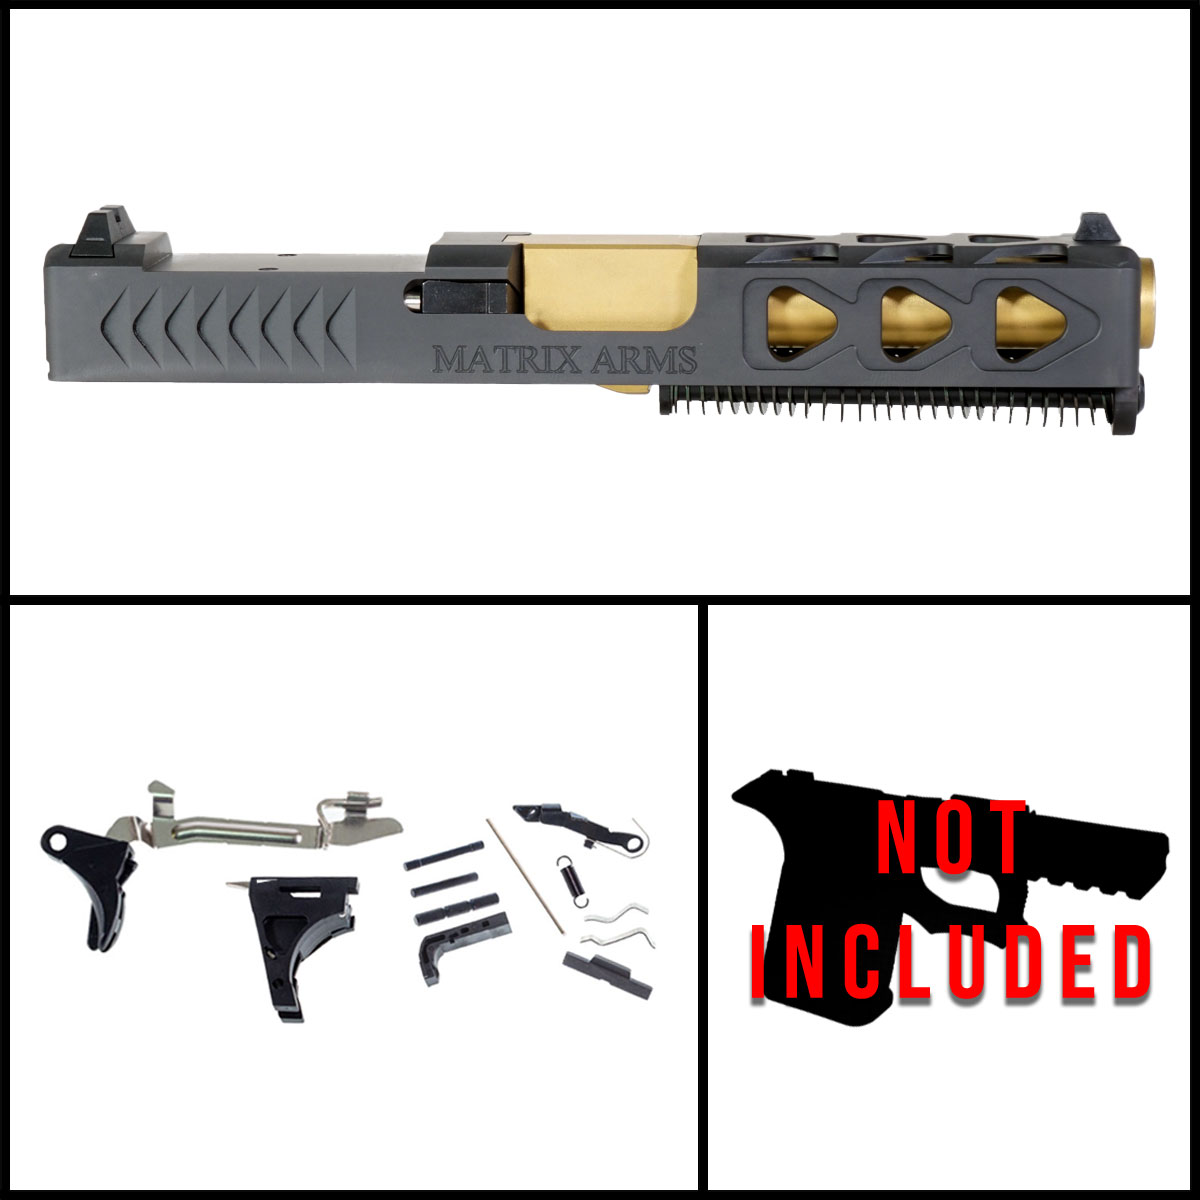 DTT 'The Black Knight' 9mm Full Gun Kit - Glock 19 Gen 1-3 Compatible